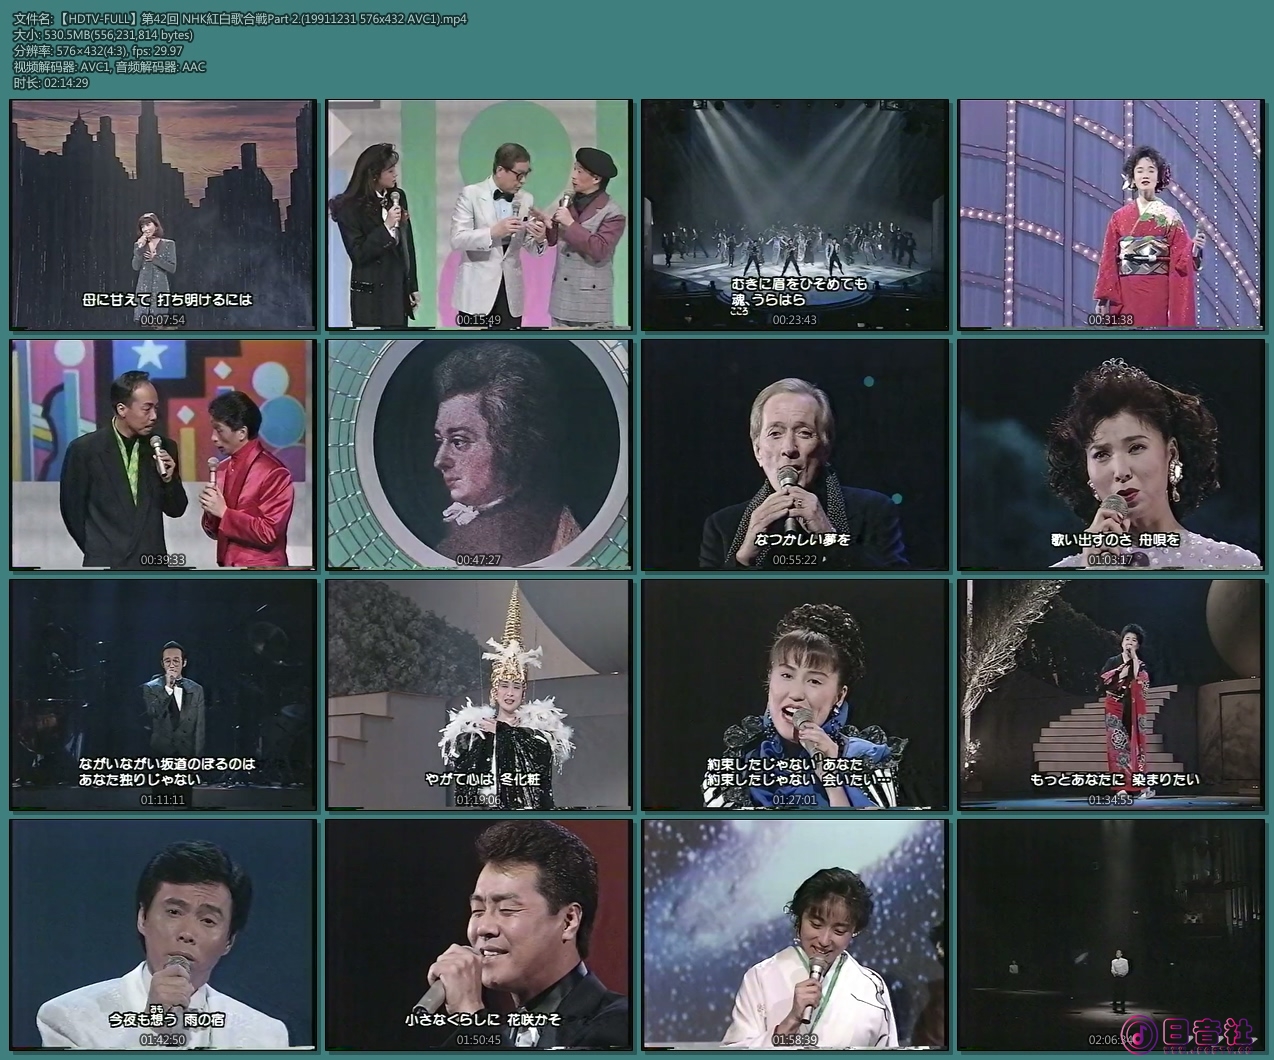 【HDTV-FULL】第42回 NHK紅白歌合戦Part 2.(19911231 576x432 AVC1).mp4.jpg